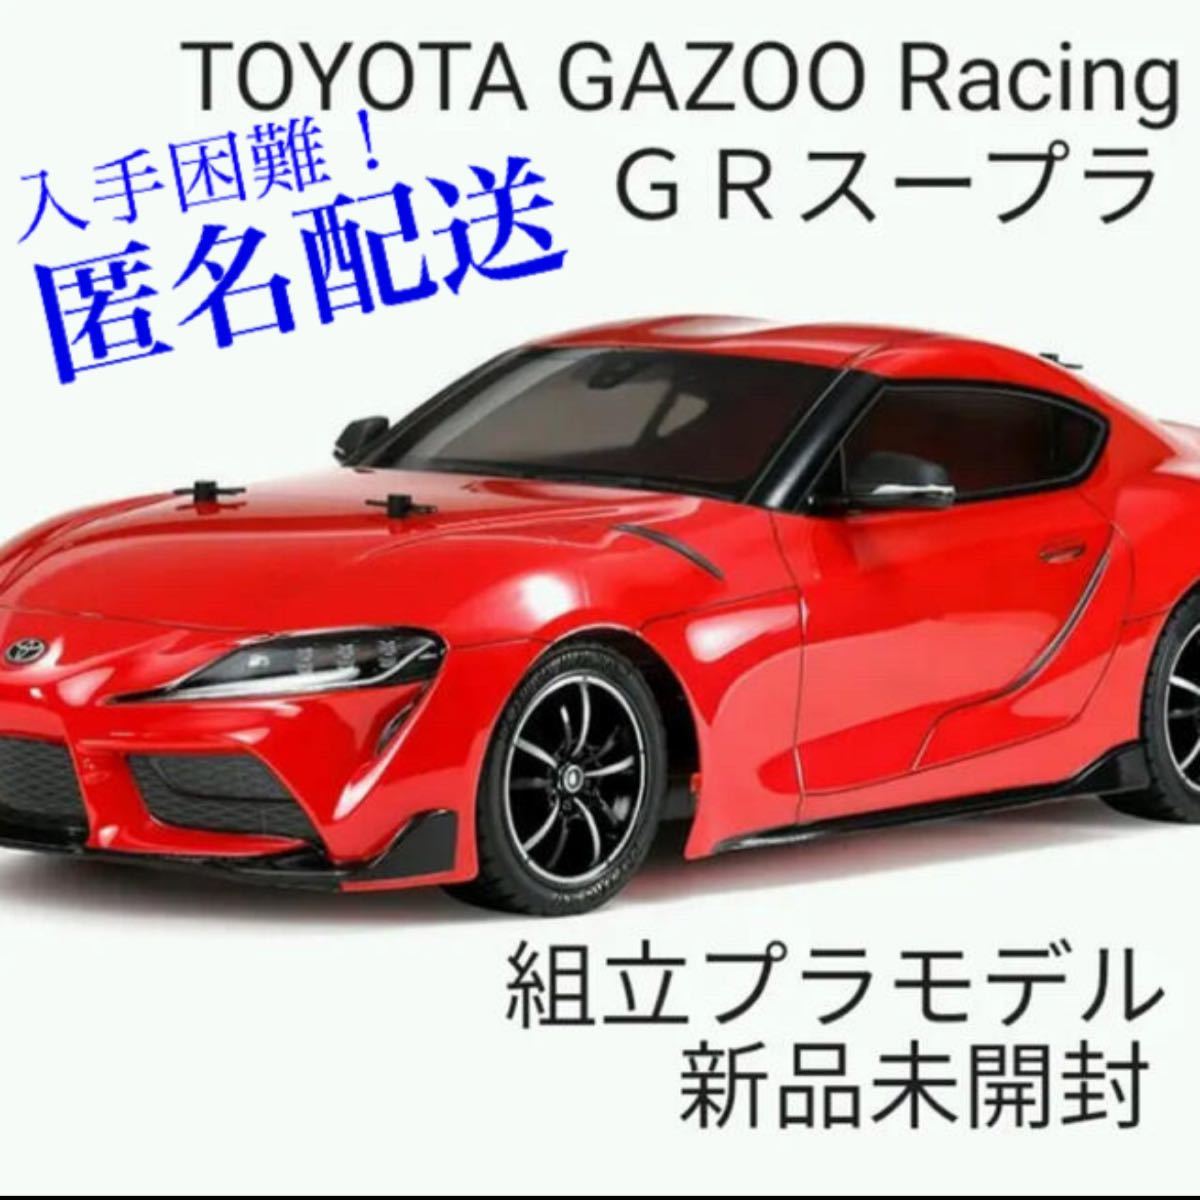 新品 未開封 トミカ GAZOO RACING ジュネーブモーターショー 非売品 トヨタスープラ GR カズー レーシング 限定 レーシングコンセプト 